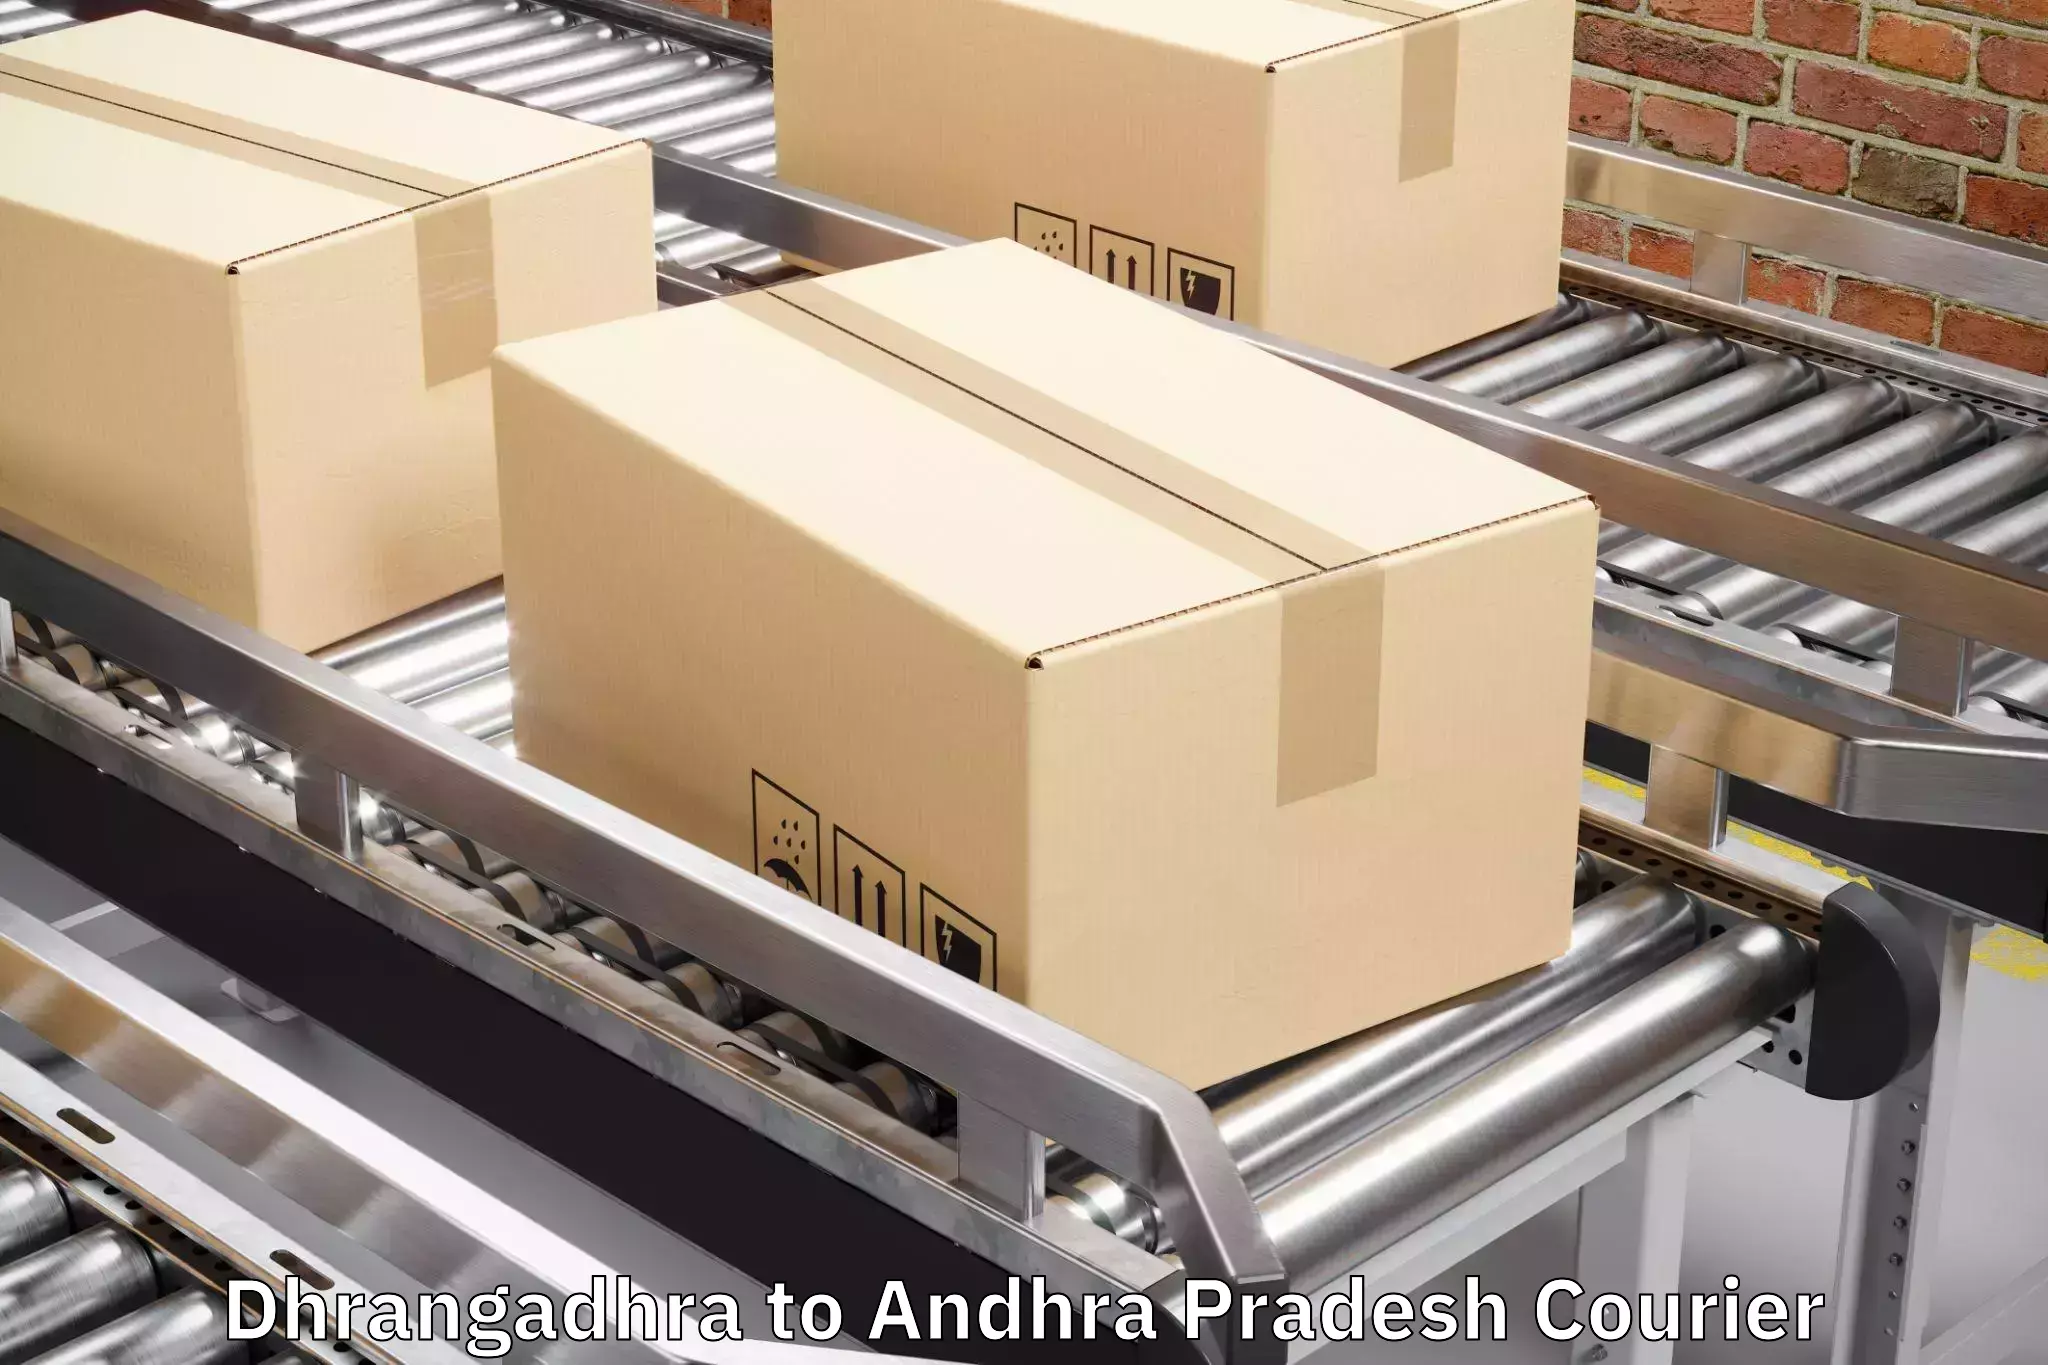 Baggage shipping schedule Dhrangadhra to Annavaram